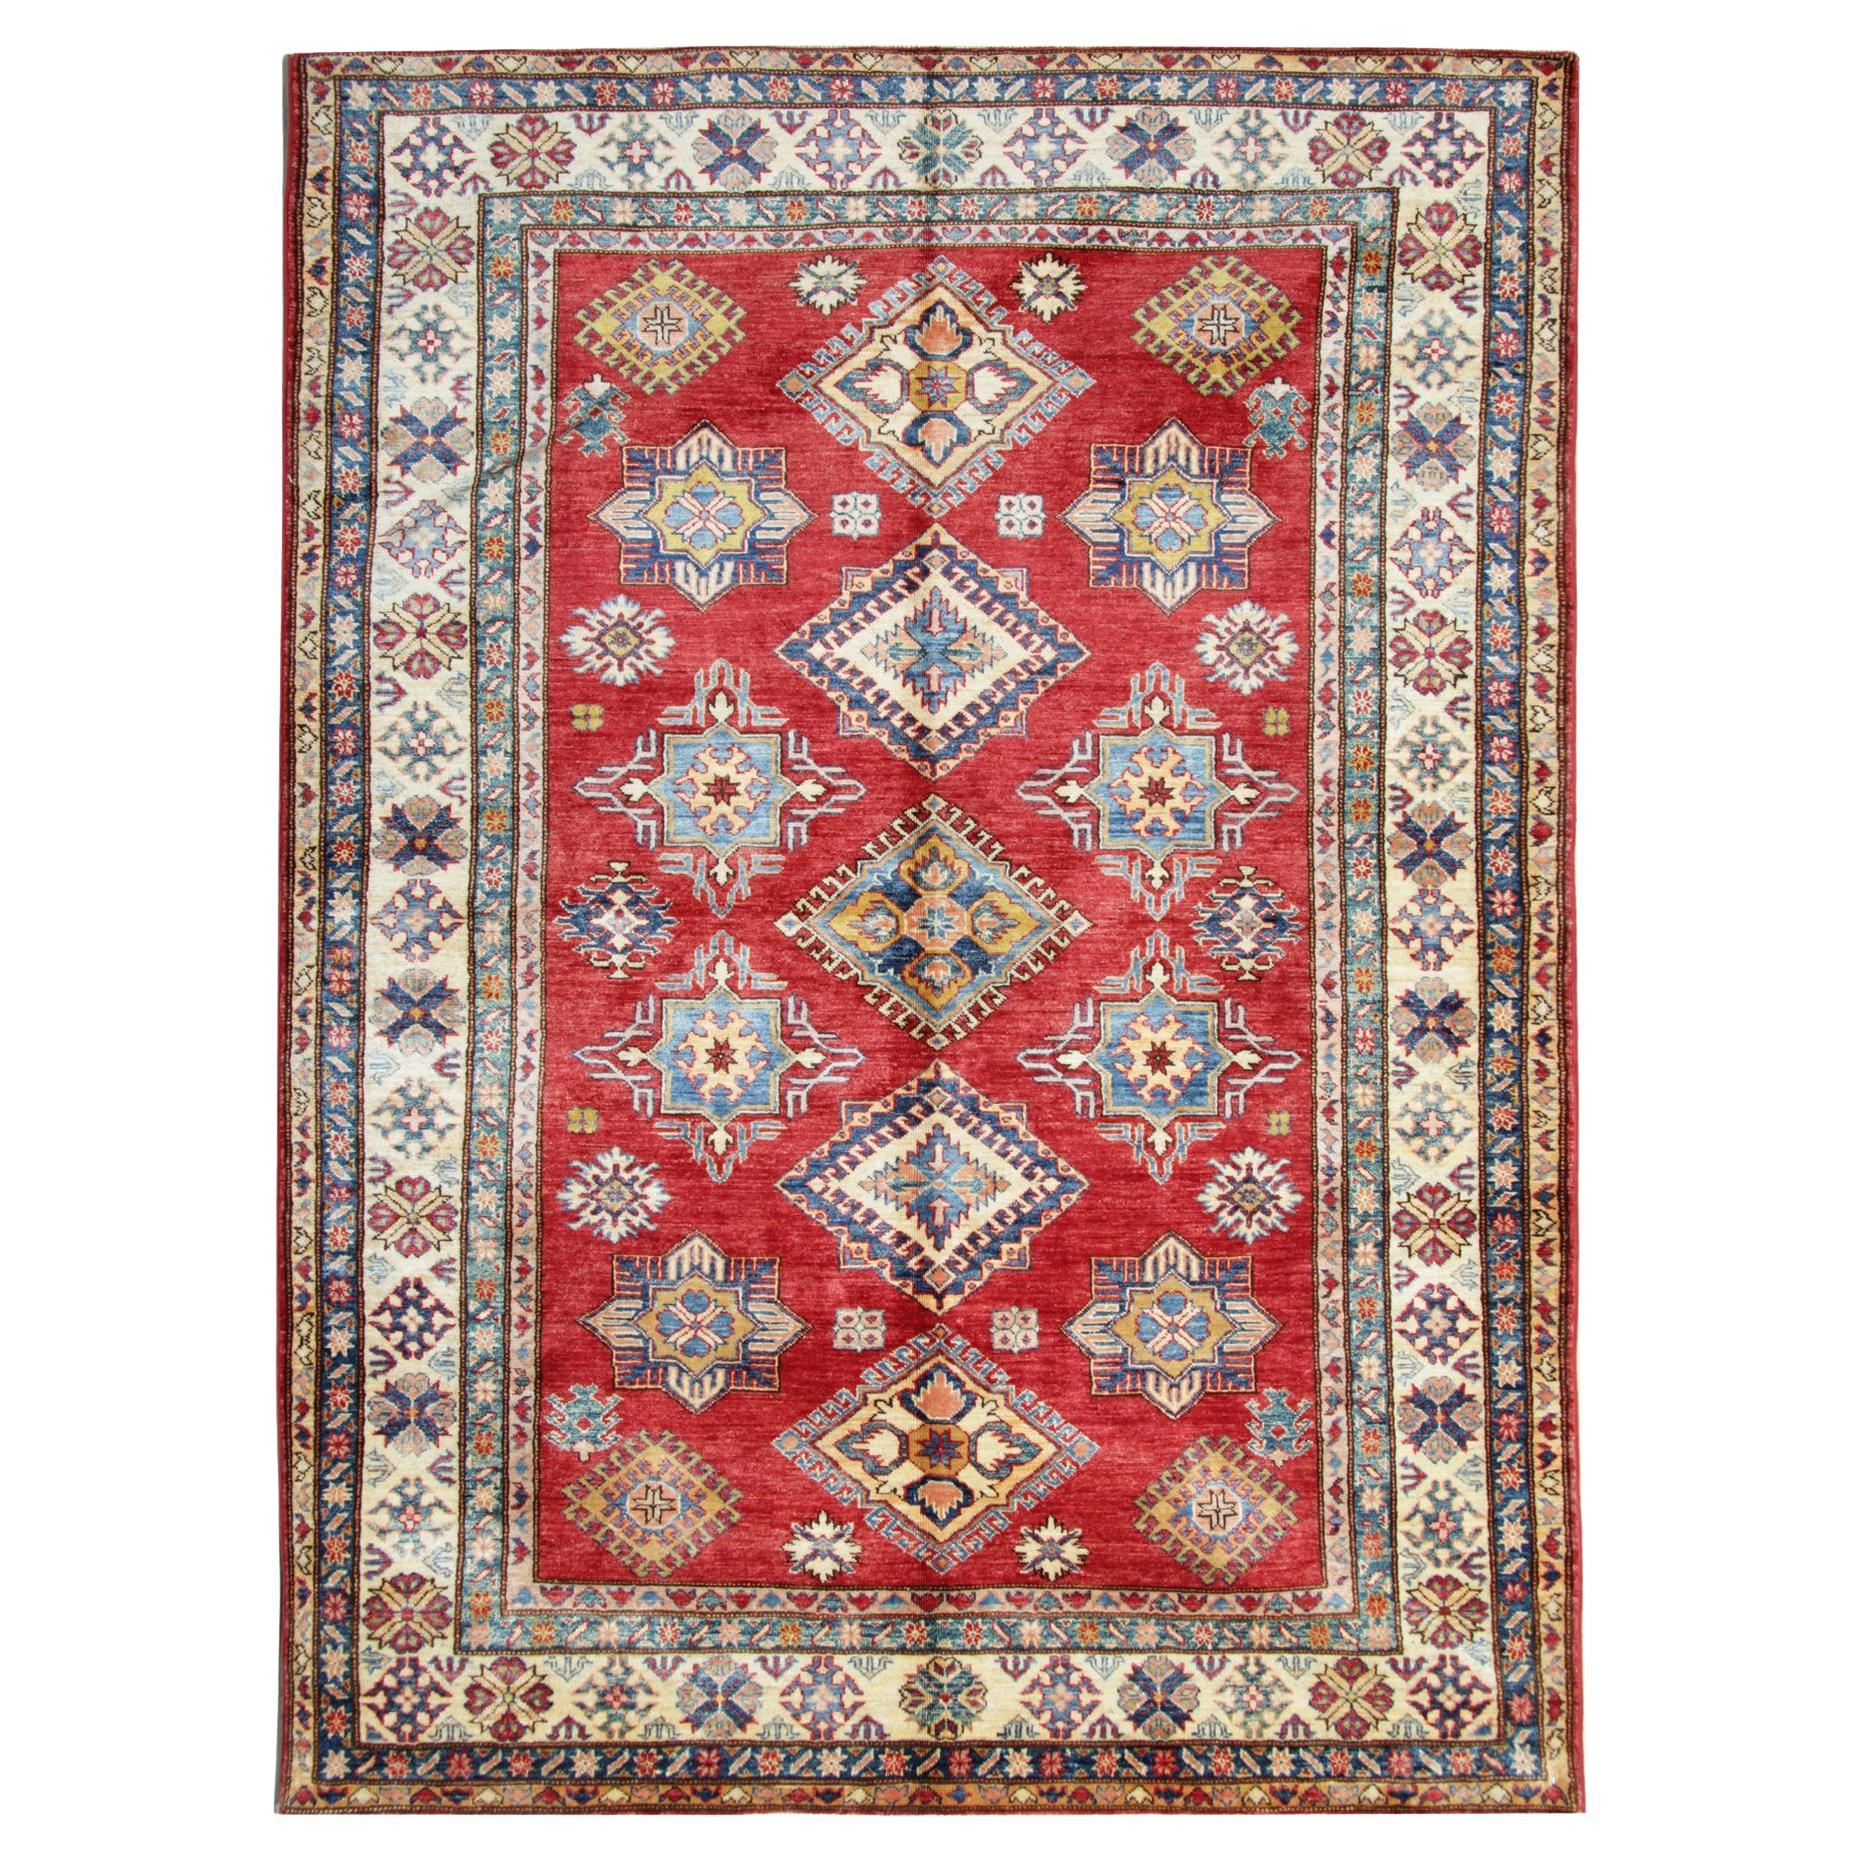 Rote Orientalische Geometrische Teppiche, Handgefertigte Teppiche Elfenbein Teppiche zum Verkauf